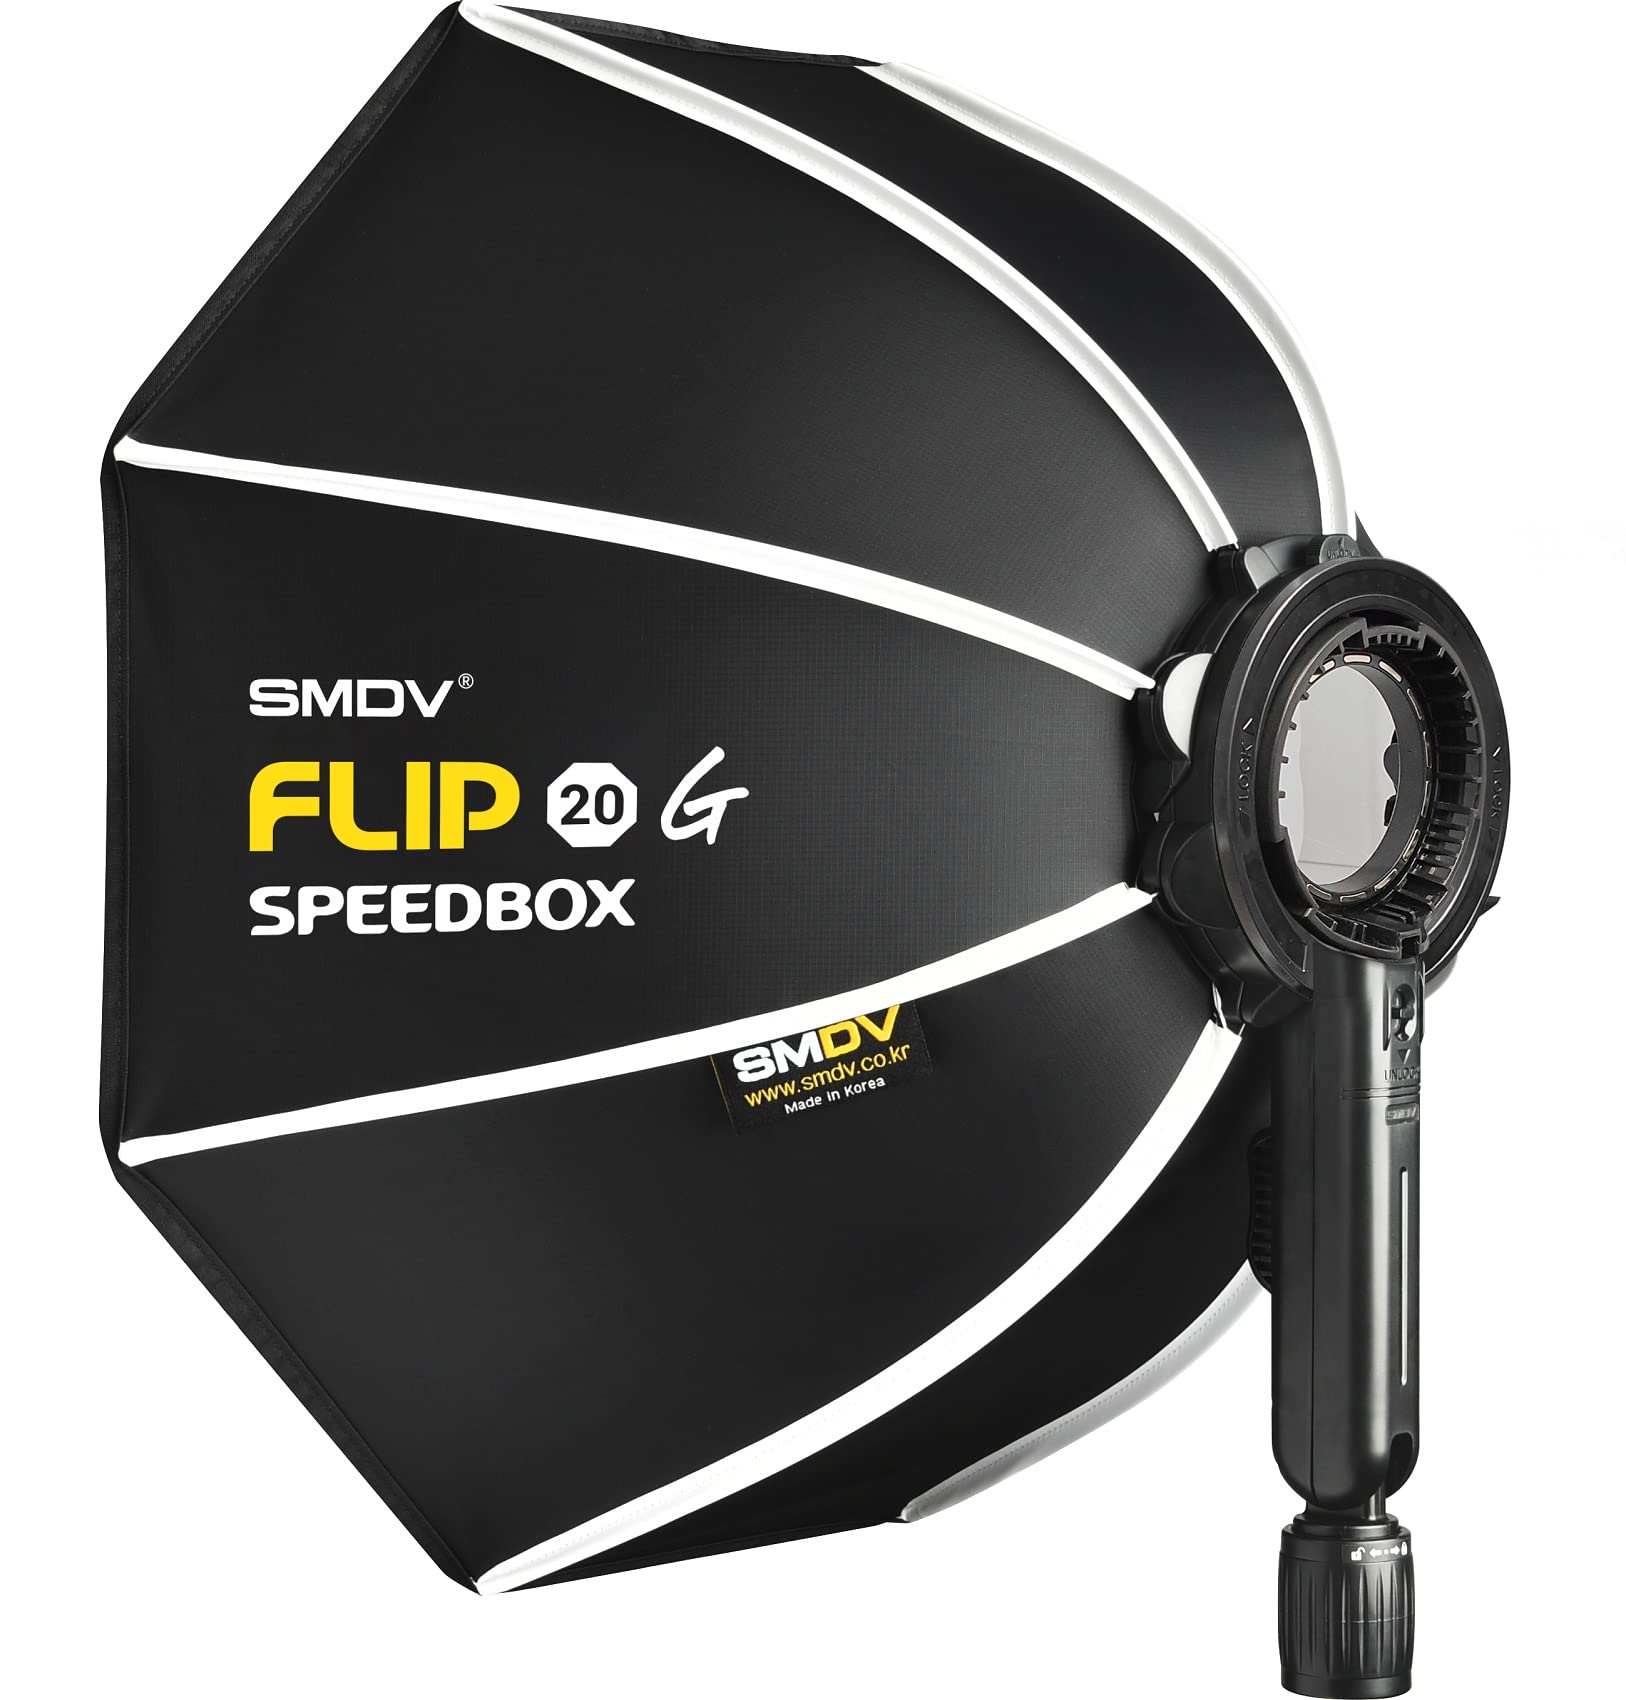 Impulsfoto SMDV Softbox Speedbox-Flip 20 | 50 cm Ø | 440 x 130 mm | Einsatzbereit in 1 Sek. | Mit Adapter für Godox V1